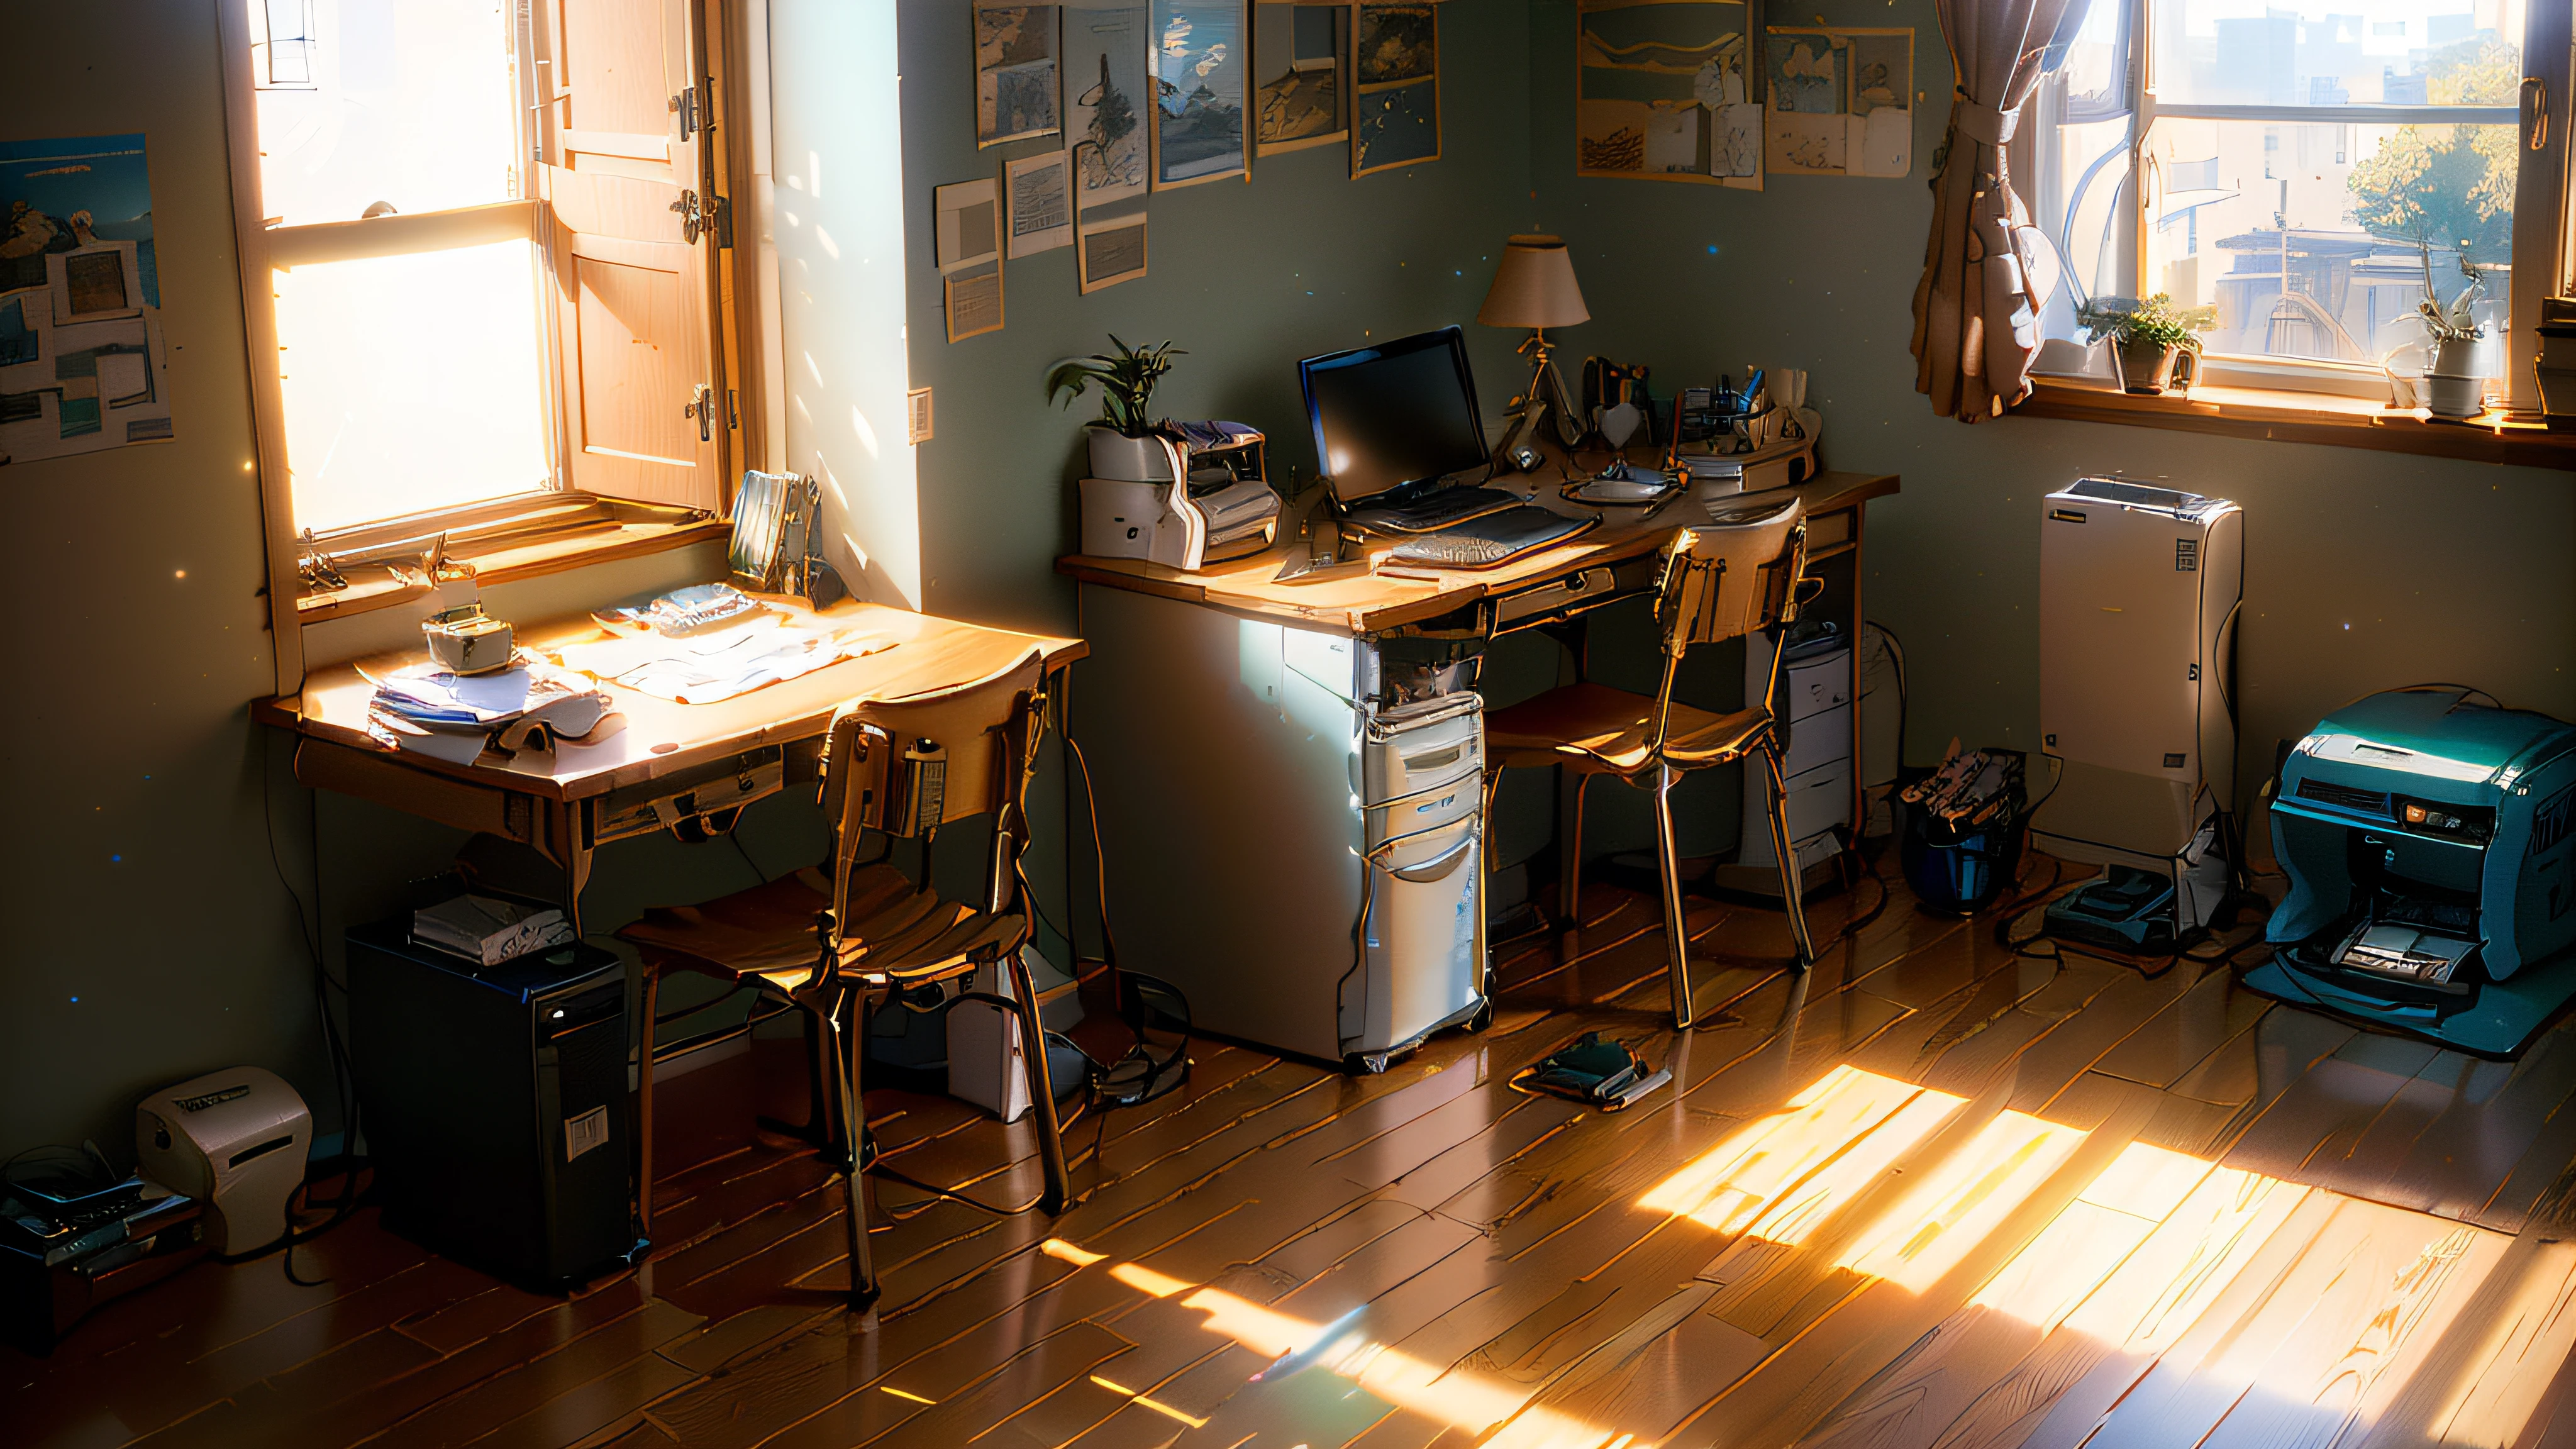 방에 컴퓨터와 프린터가 있는 책상이 있었어요, 스튜디오 지브리 햇빛, Realistic 오후 조명, 영화 같은 아침 햇살, 오후 조명, 옥탄가로 렌더링. By Makoto Shinkai, nice 오후 조명, 소니 A7R 카메라로 찍은, 스튜디오 글리블리 신카이 마코토, 아침 조명, 사실적인 방, 사실적인 조명, early 아침 조명